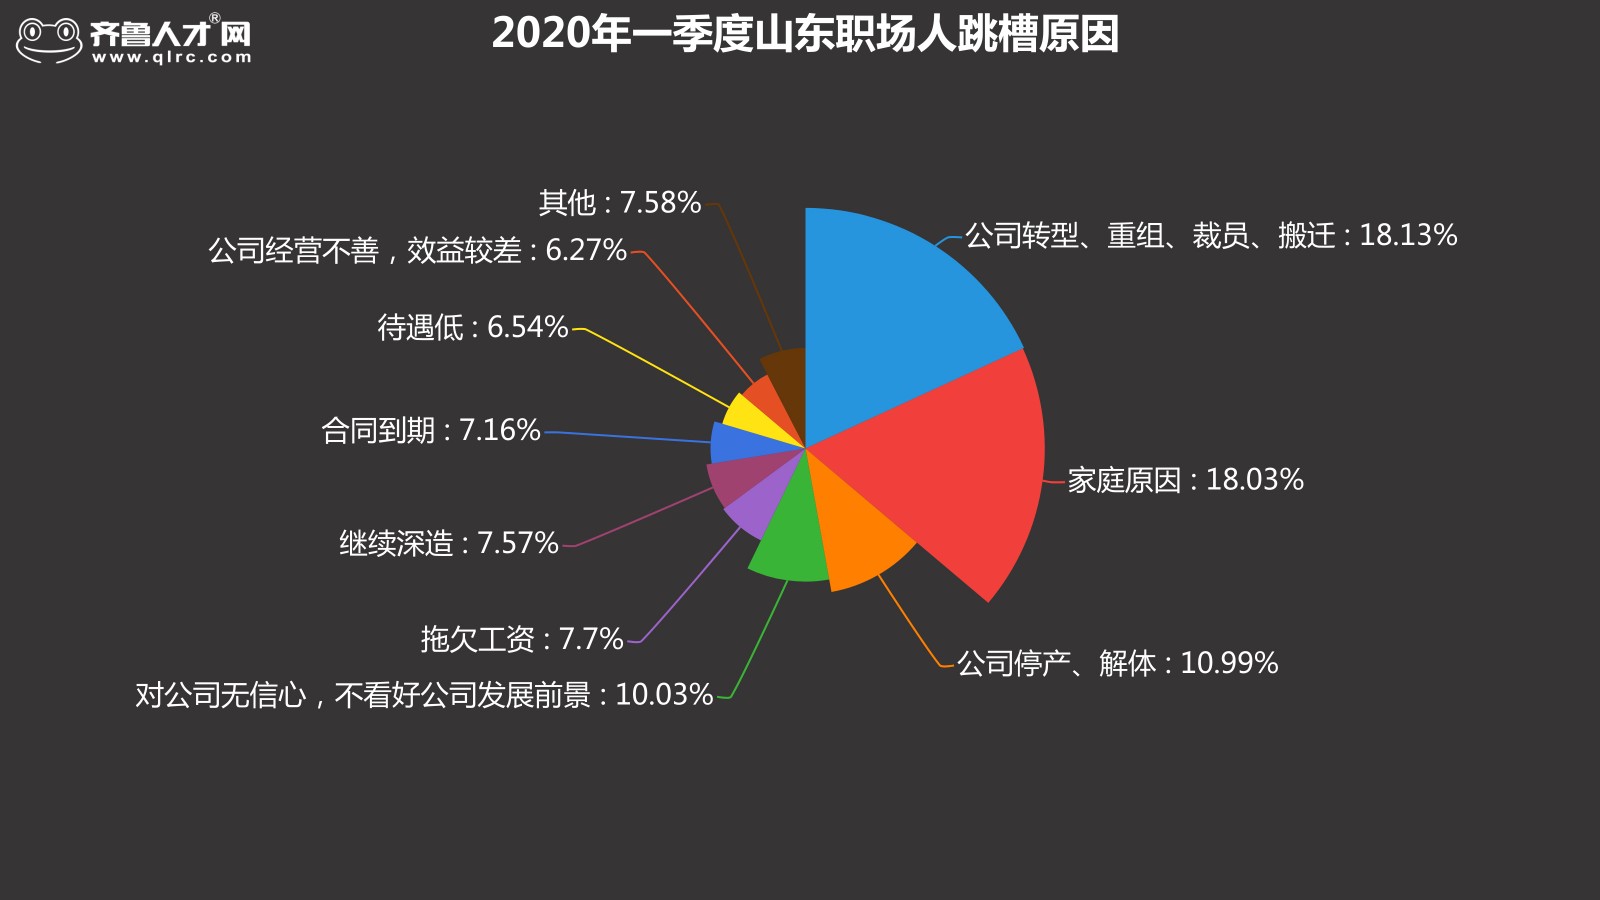 齐鲁人才网-2020年一季度跳槽数据图5.jpg